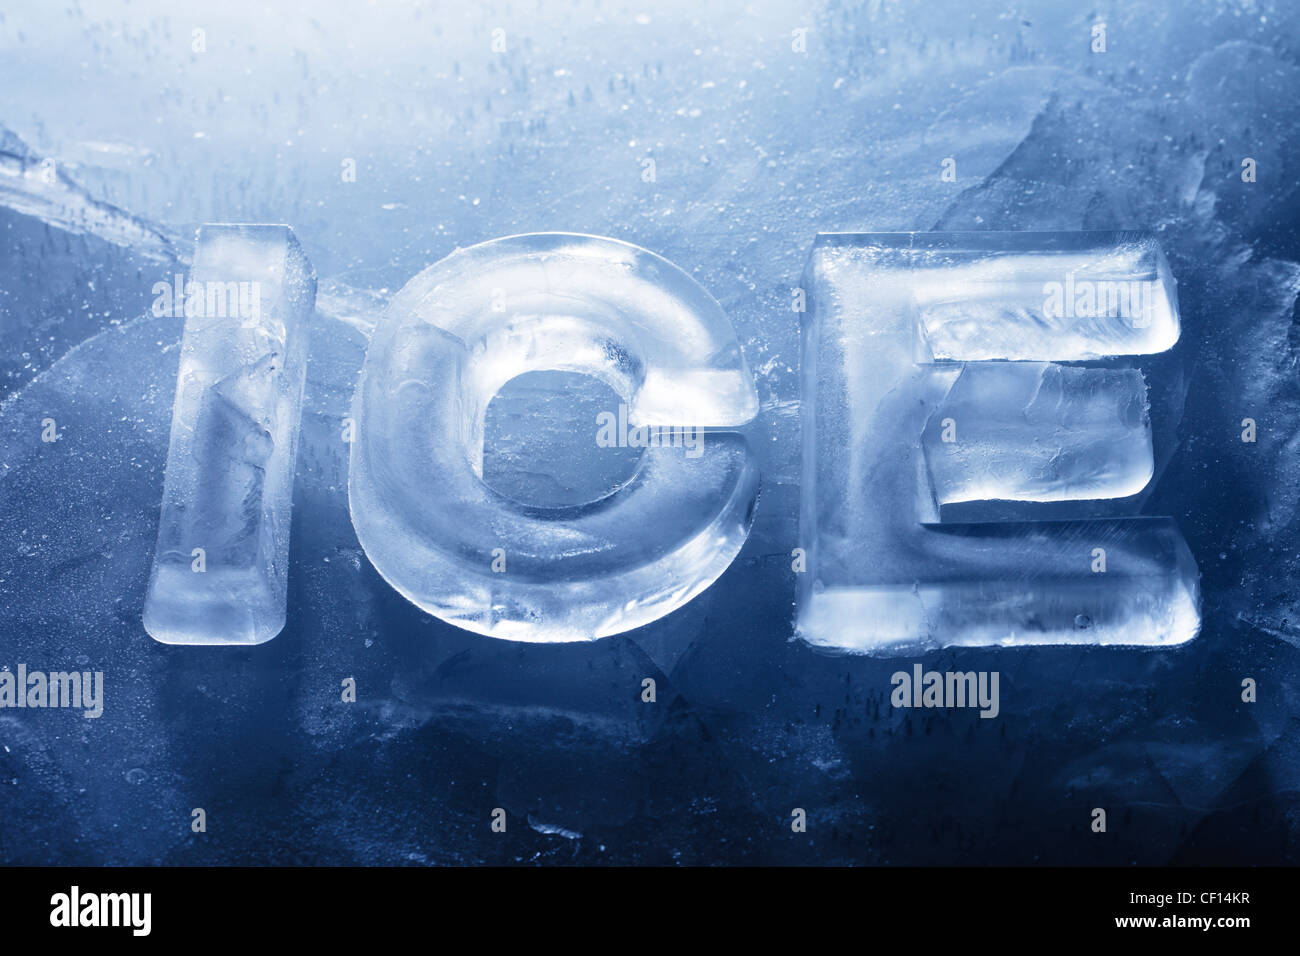 Wort-Eis hergestellt mit echtem Eisbuchstaben auf dem Eis. Stockfoto